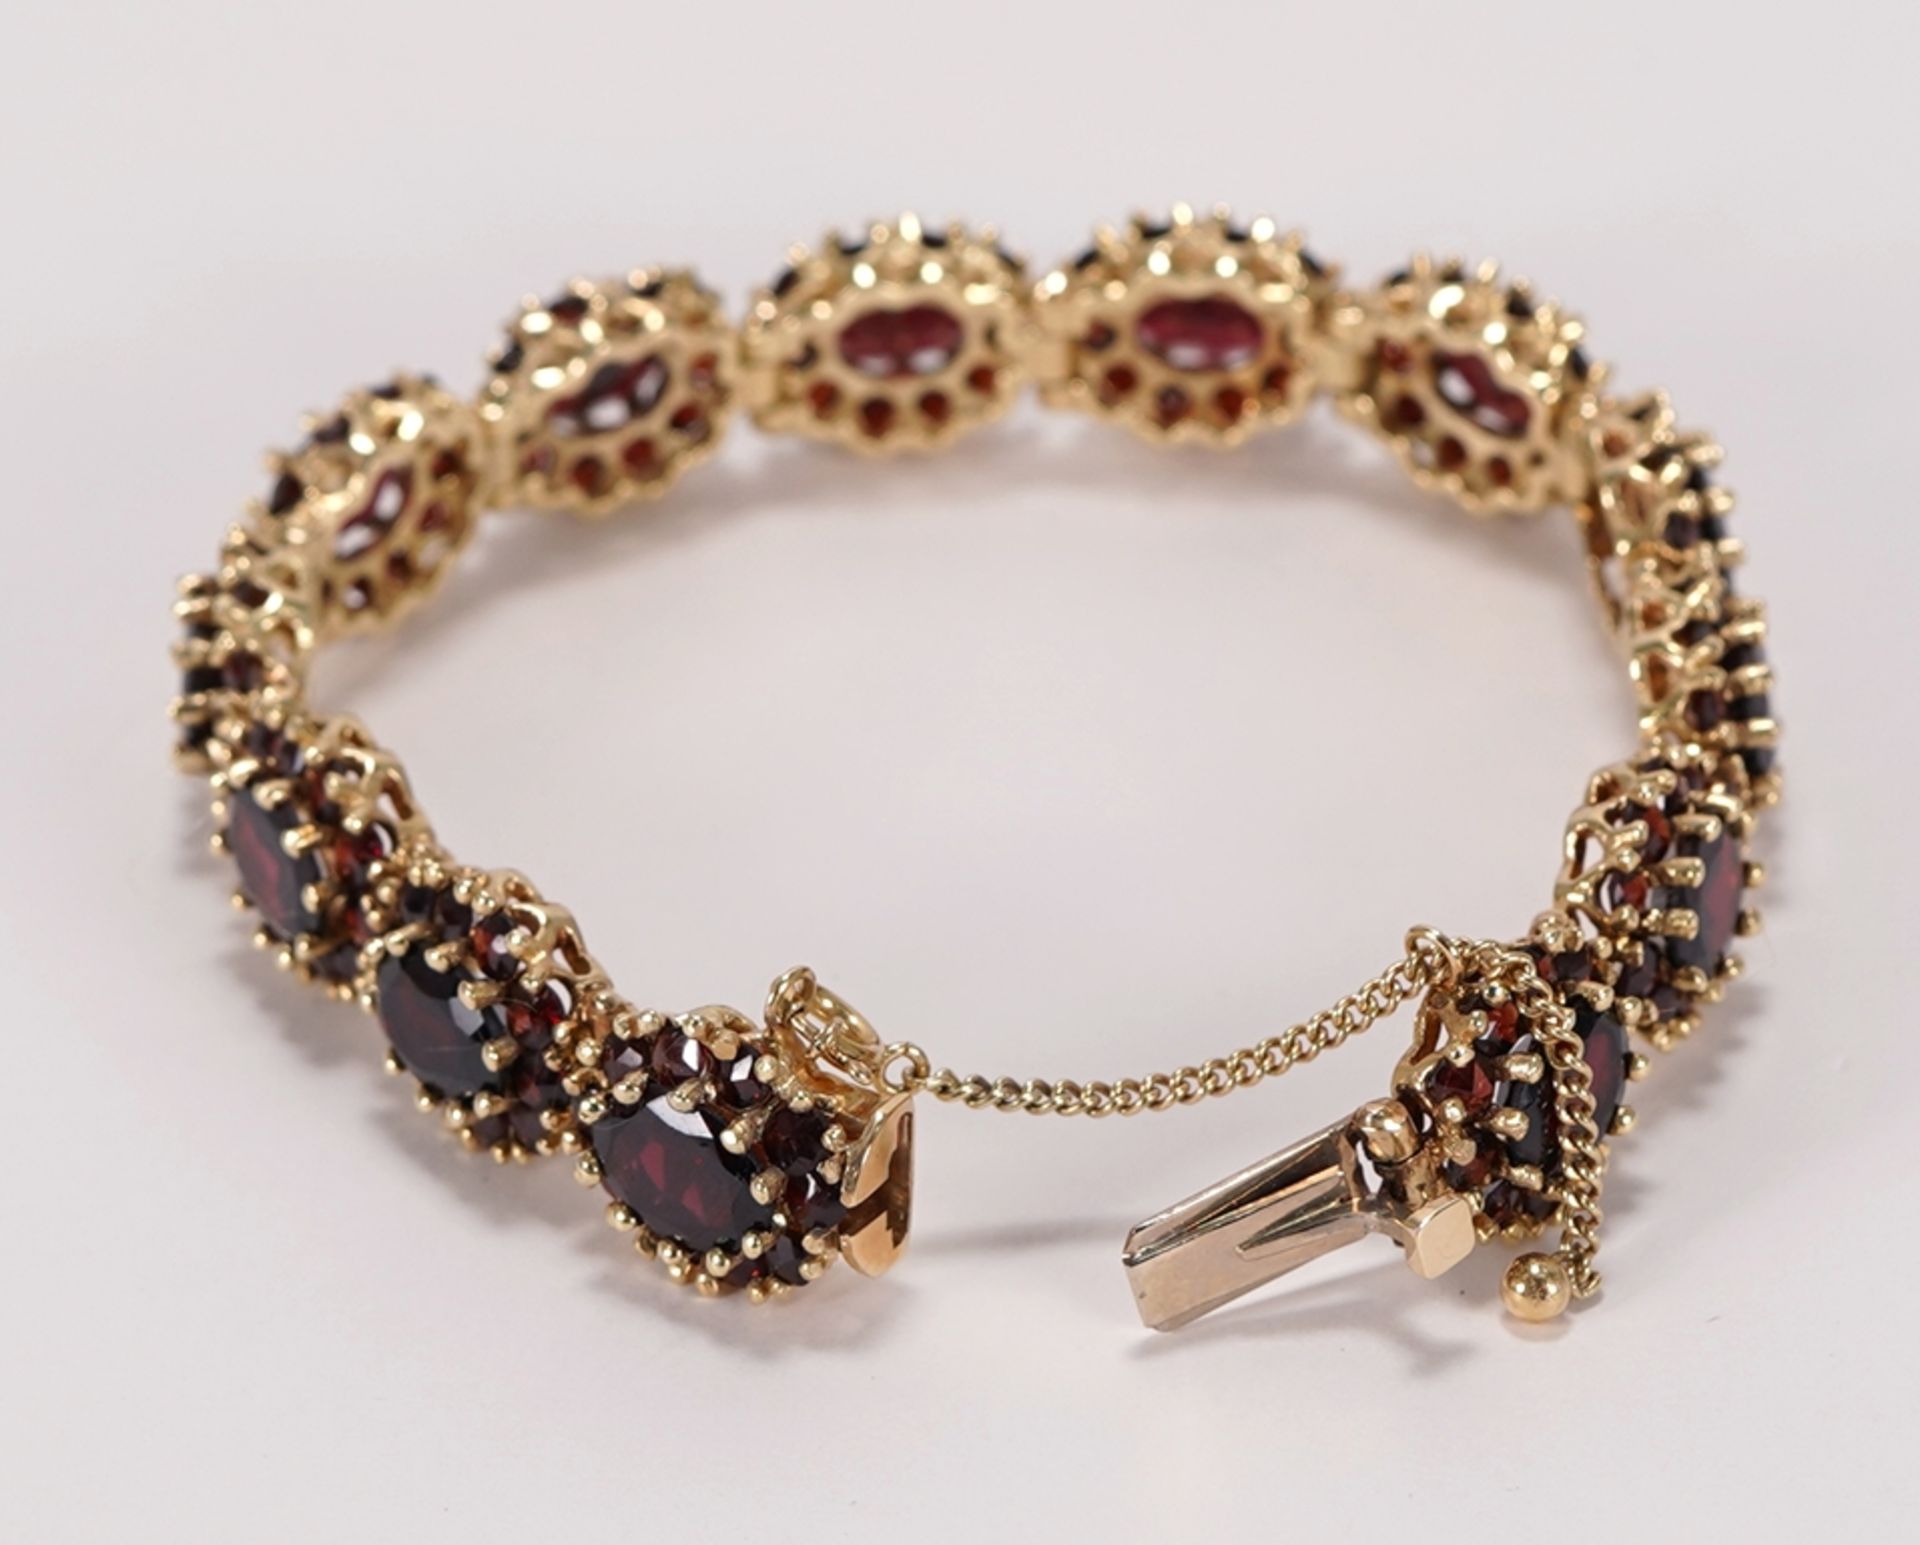 Garnet bracelet - Image 2 of 2